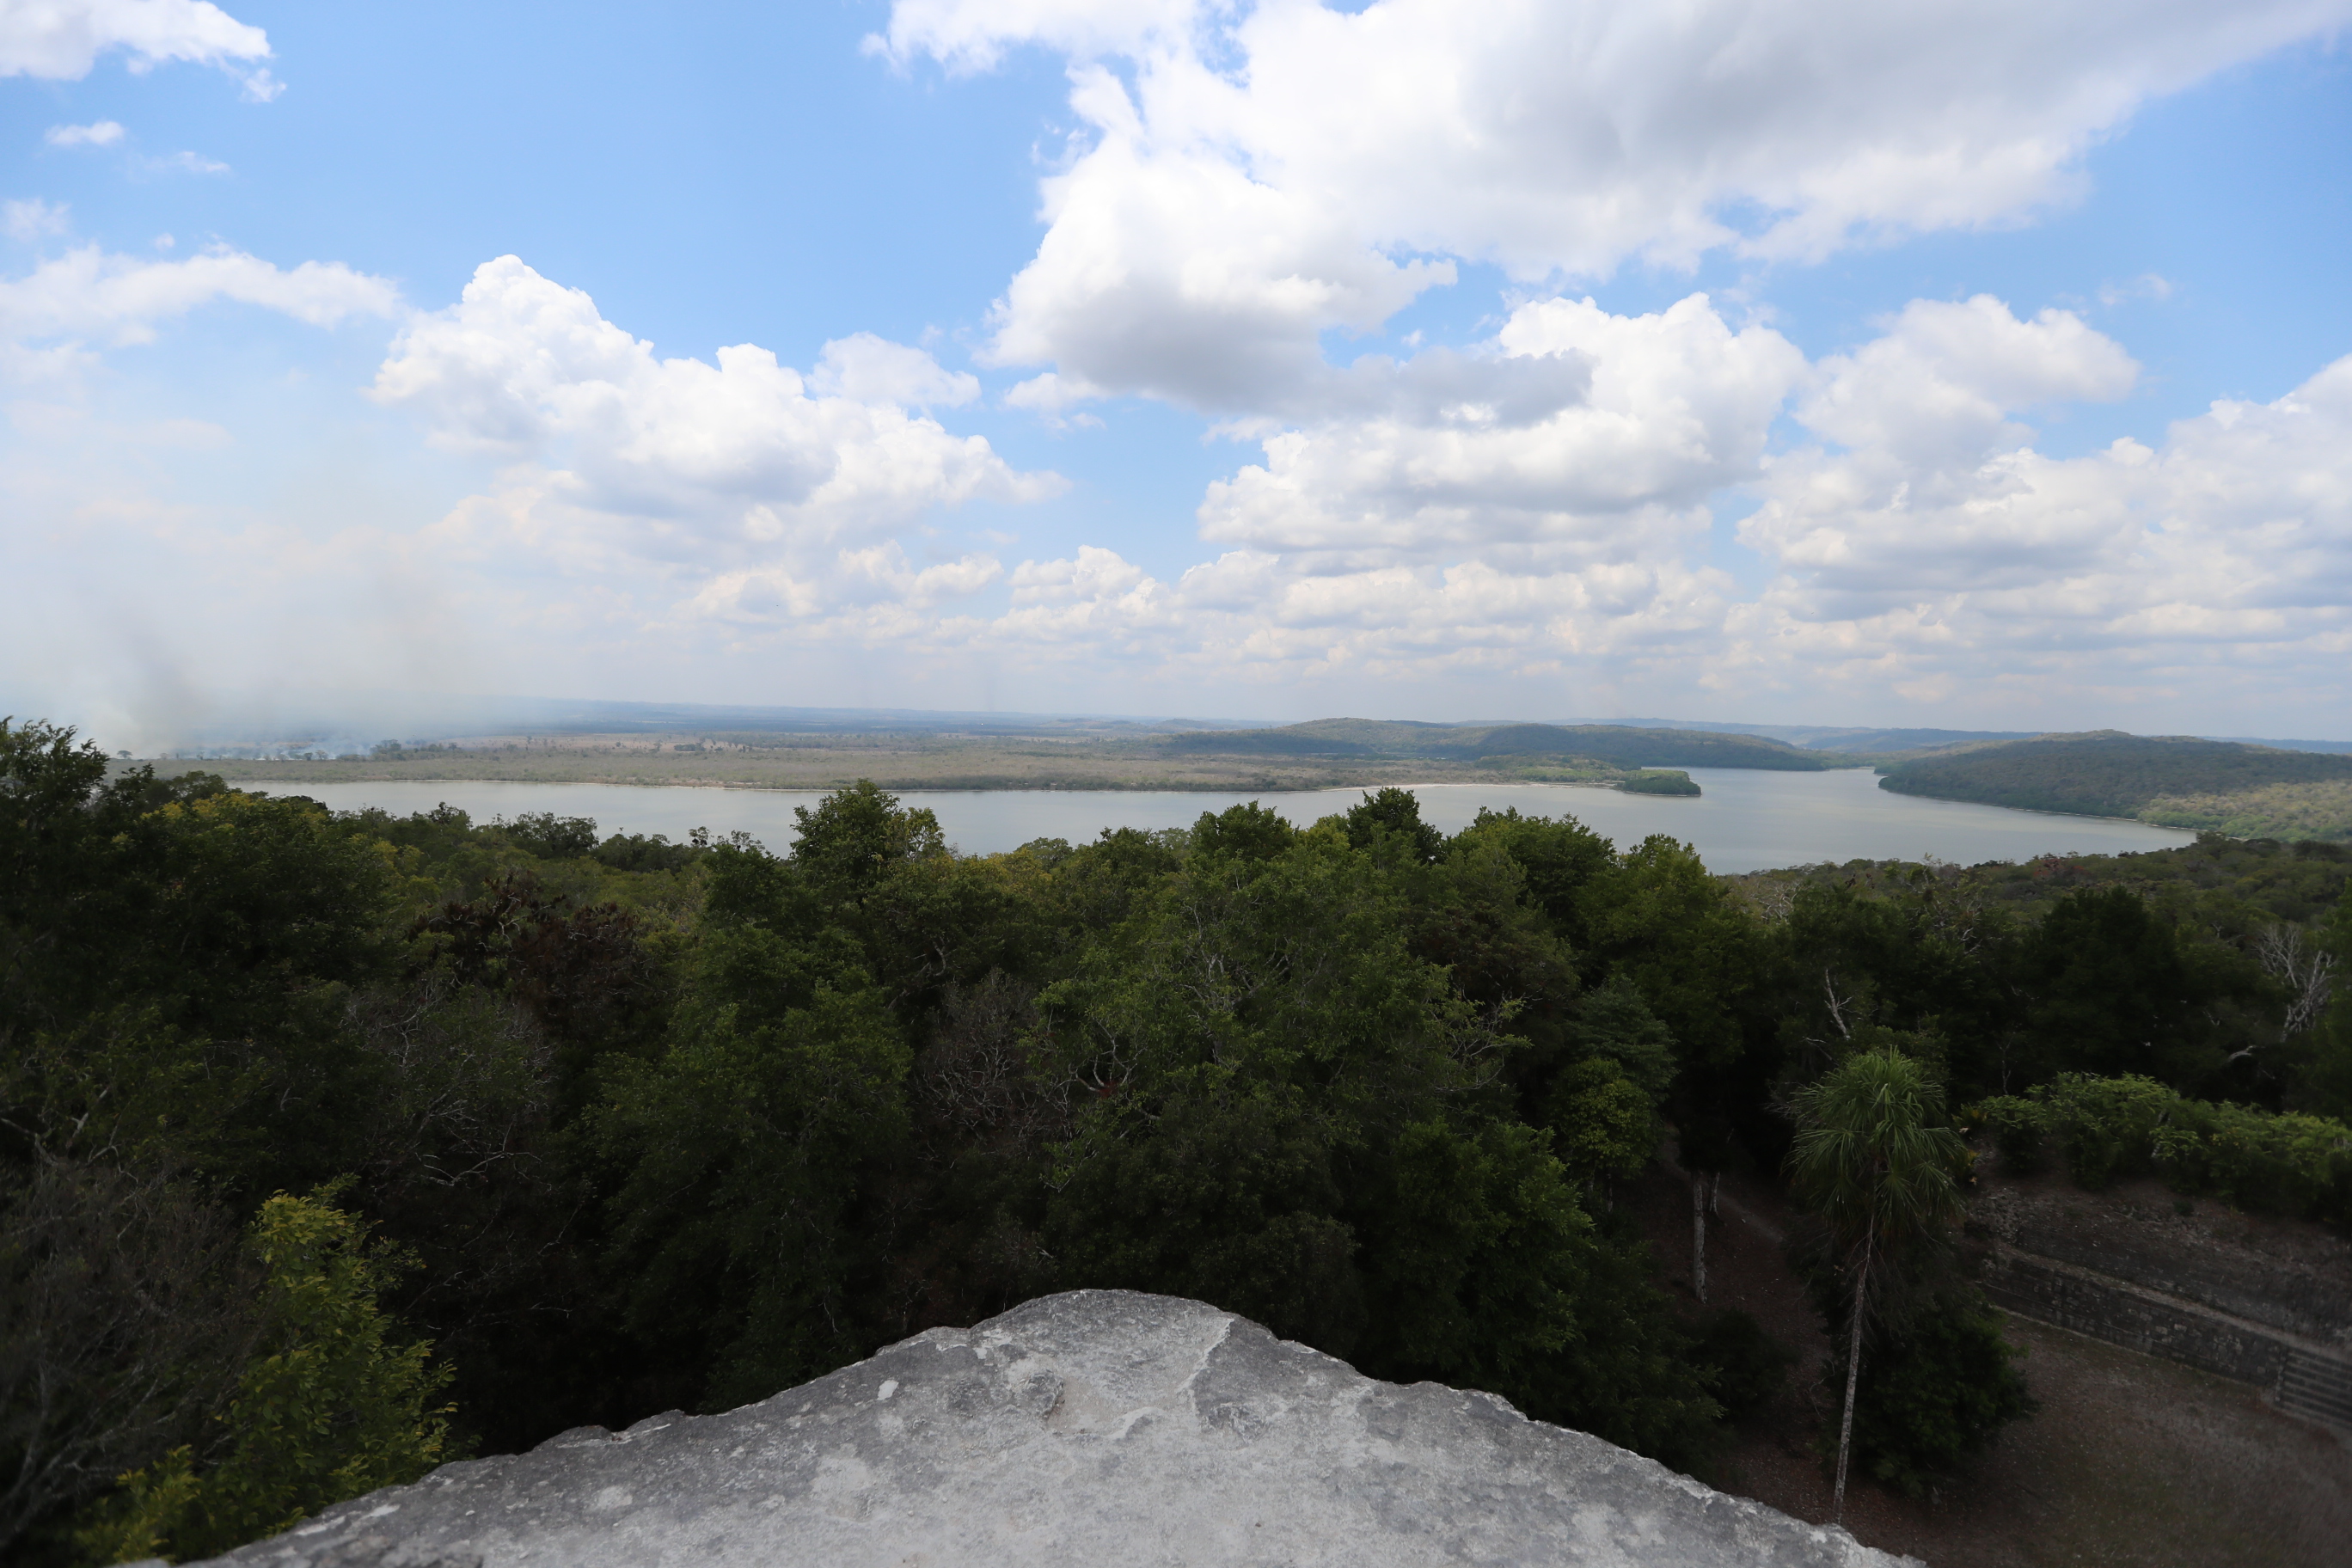 Vista de la laguna del Parque Nacional Yaxhá desde el templo de las Manos Rojas. (Foto Prensa Libre: Oscar Fernando García).

